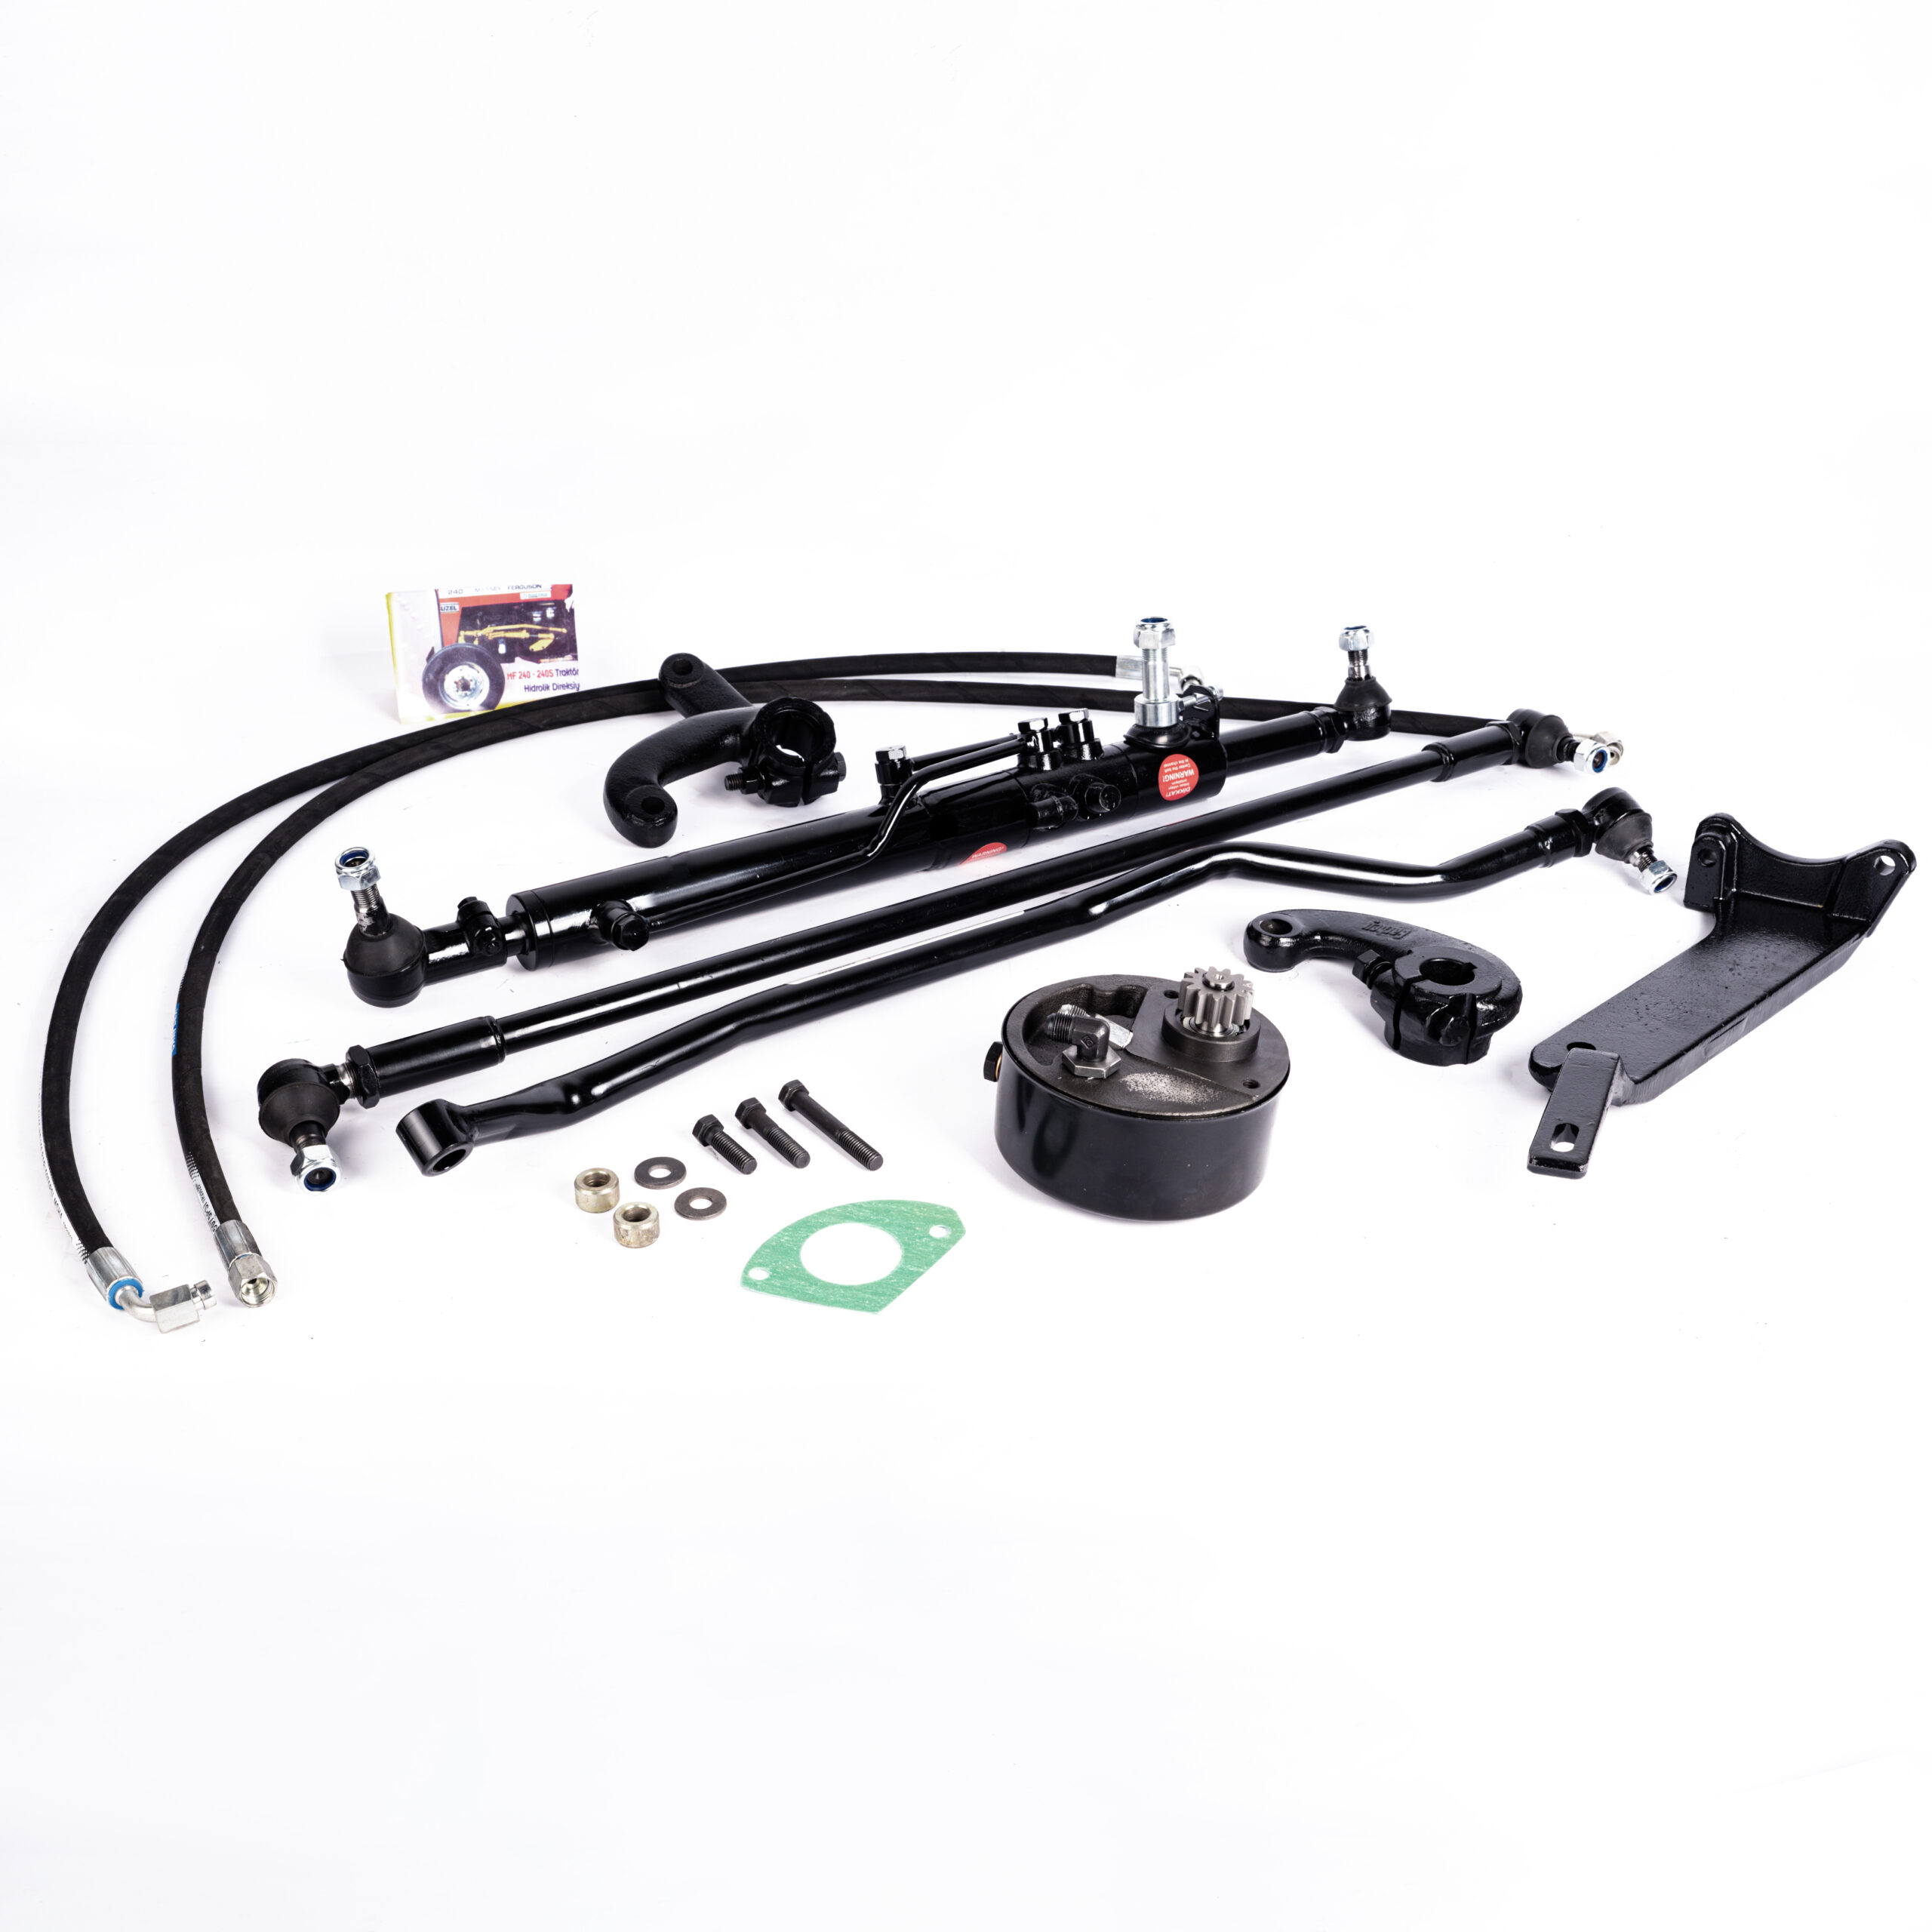 Power Steering Kit for Massey Ferguson MF 135 – Straight Axle